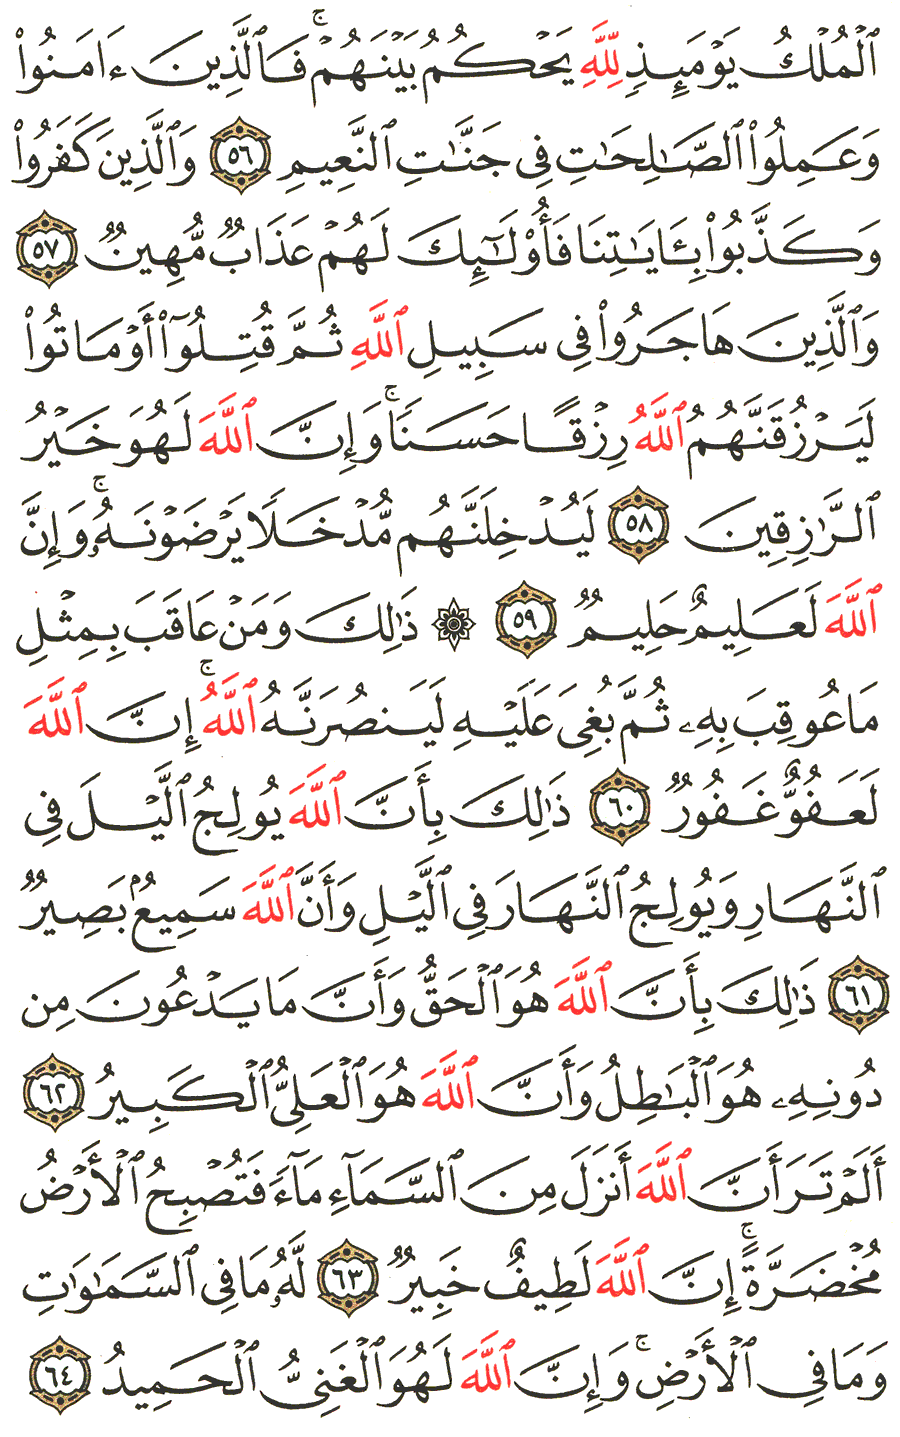 الصفحة 339 من القرآن الكريم